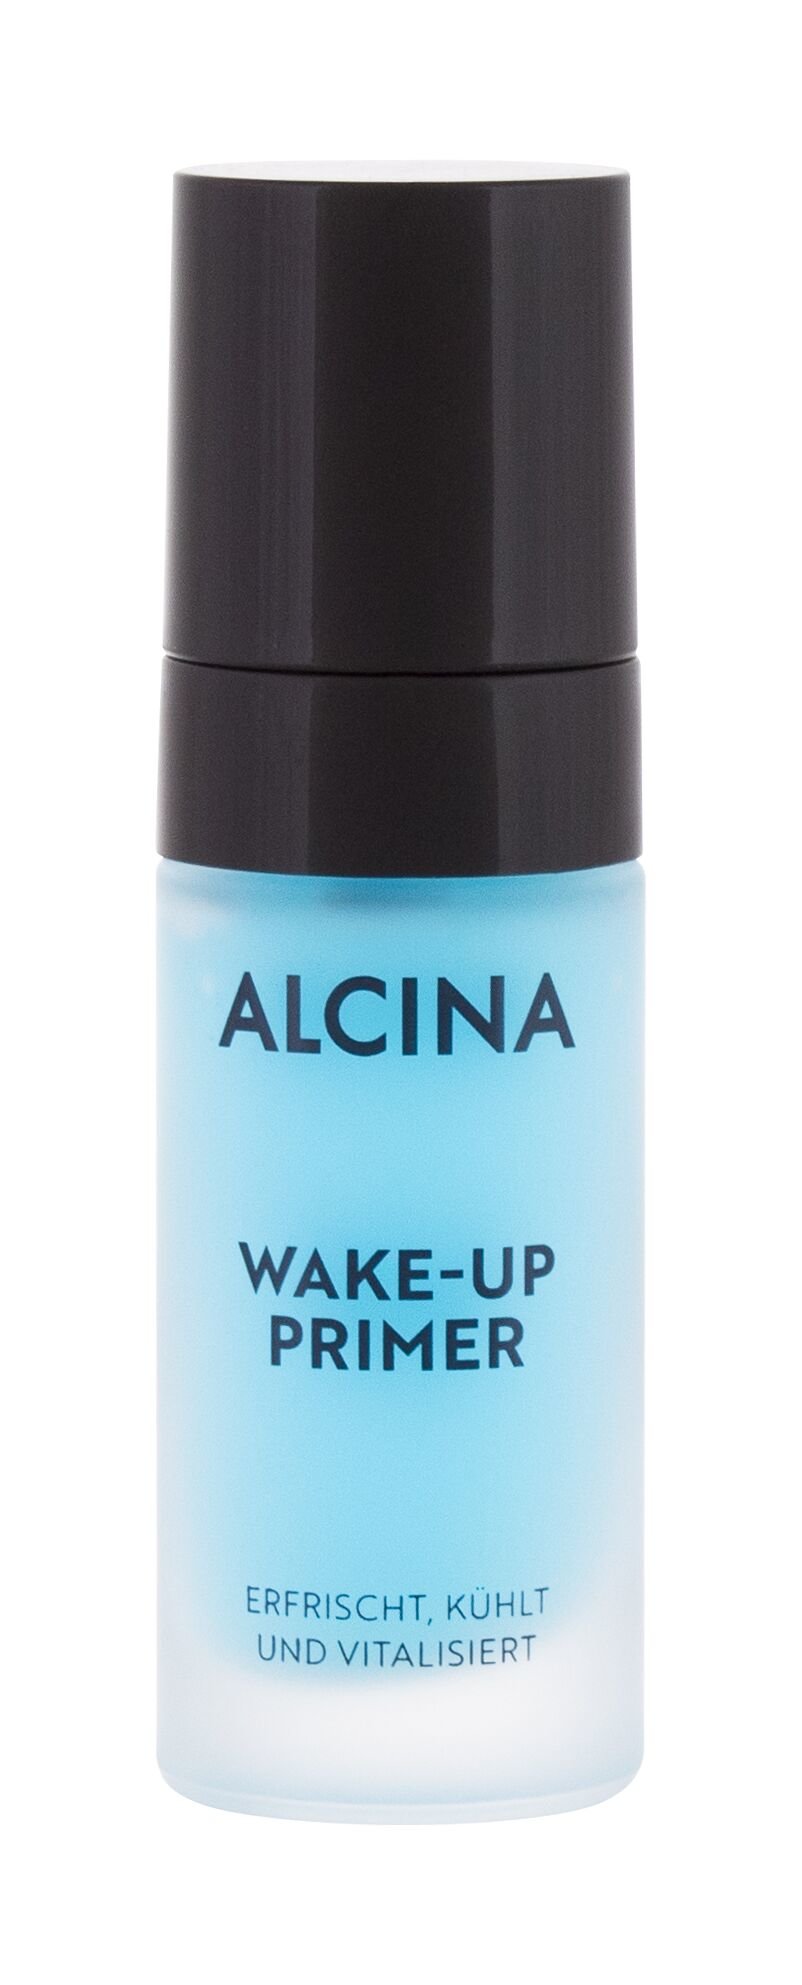 ALCINA Wake-Up Primer 17ml primeris